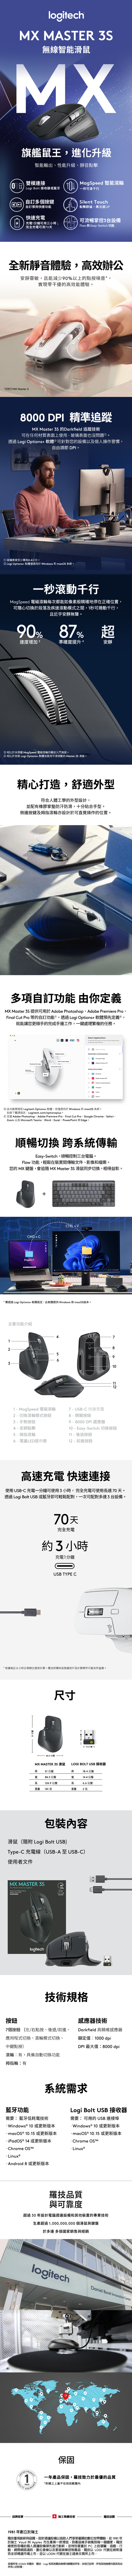 羅技Logitech MX Master 3S 無線滑鼠(兩色選) | 法雅客網路商店